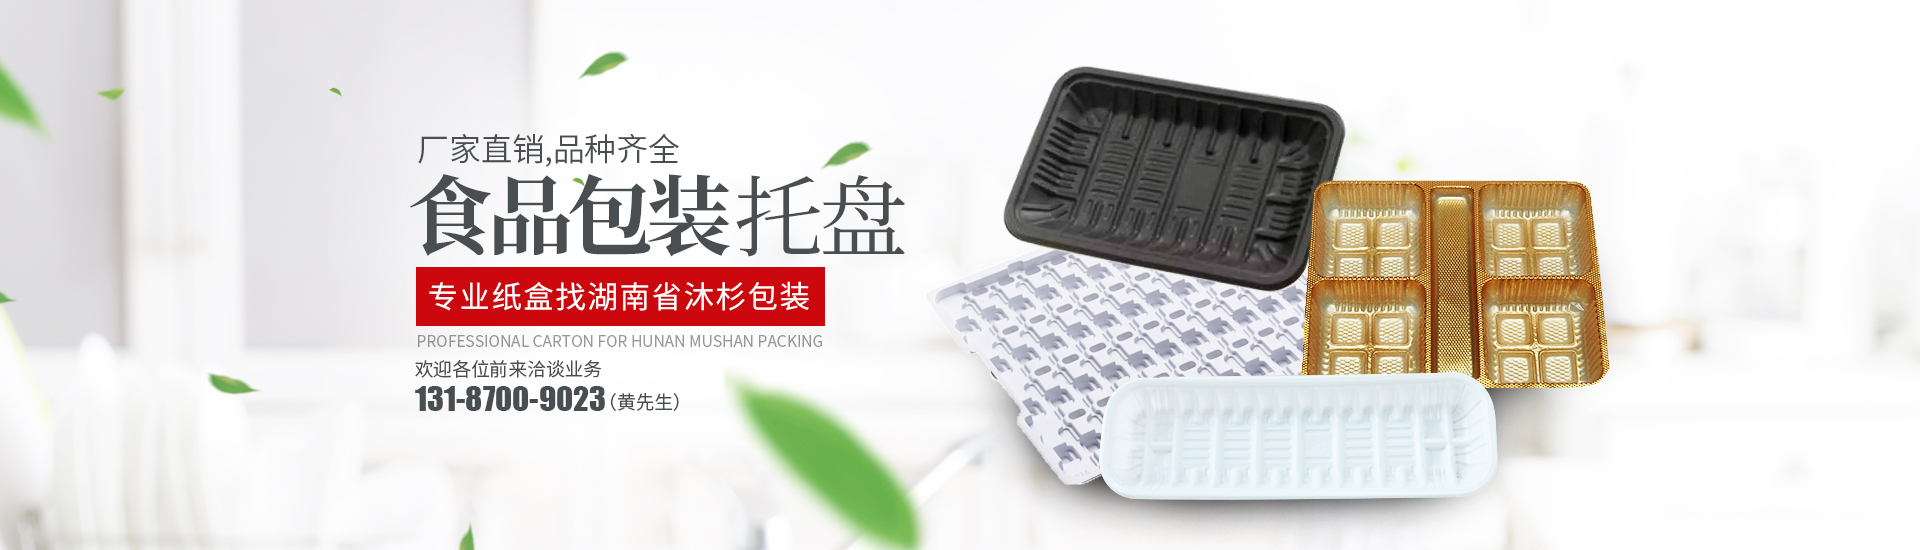 湖南省沐杉包裝有限公司_吸塑制品生產銷售|紙箱生產銷售|珍珠棉生產銷售